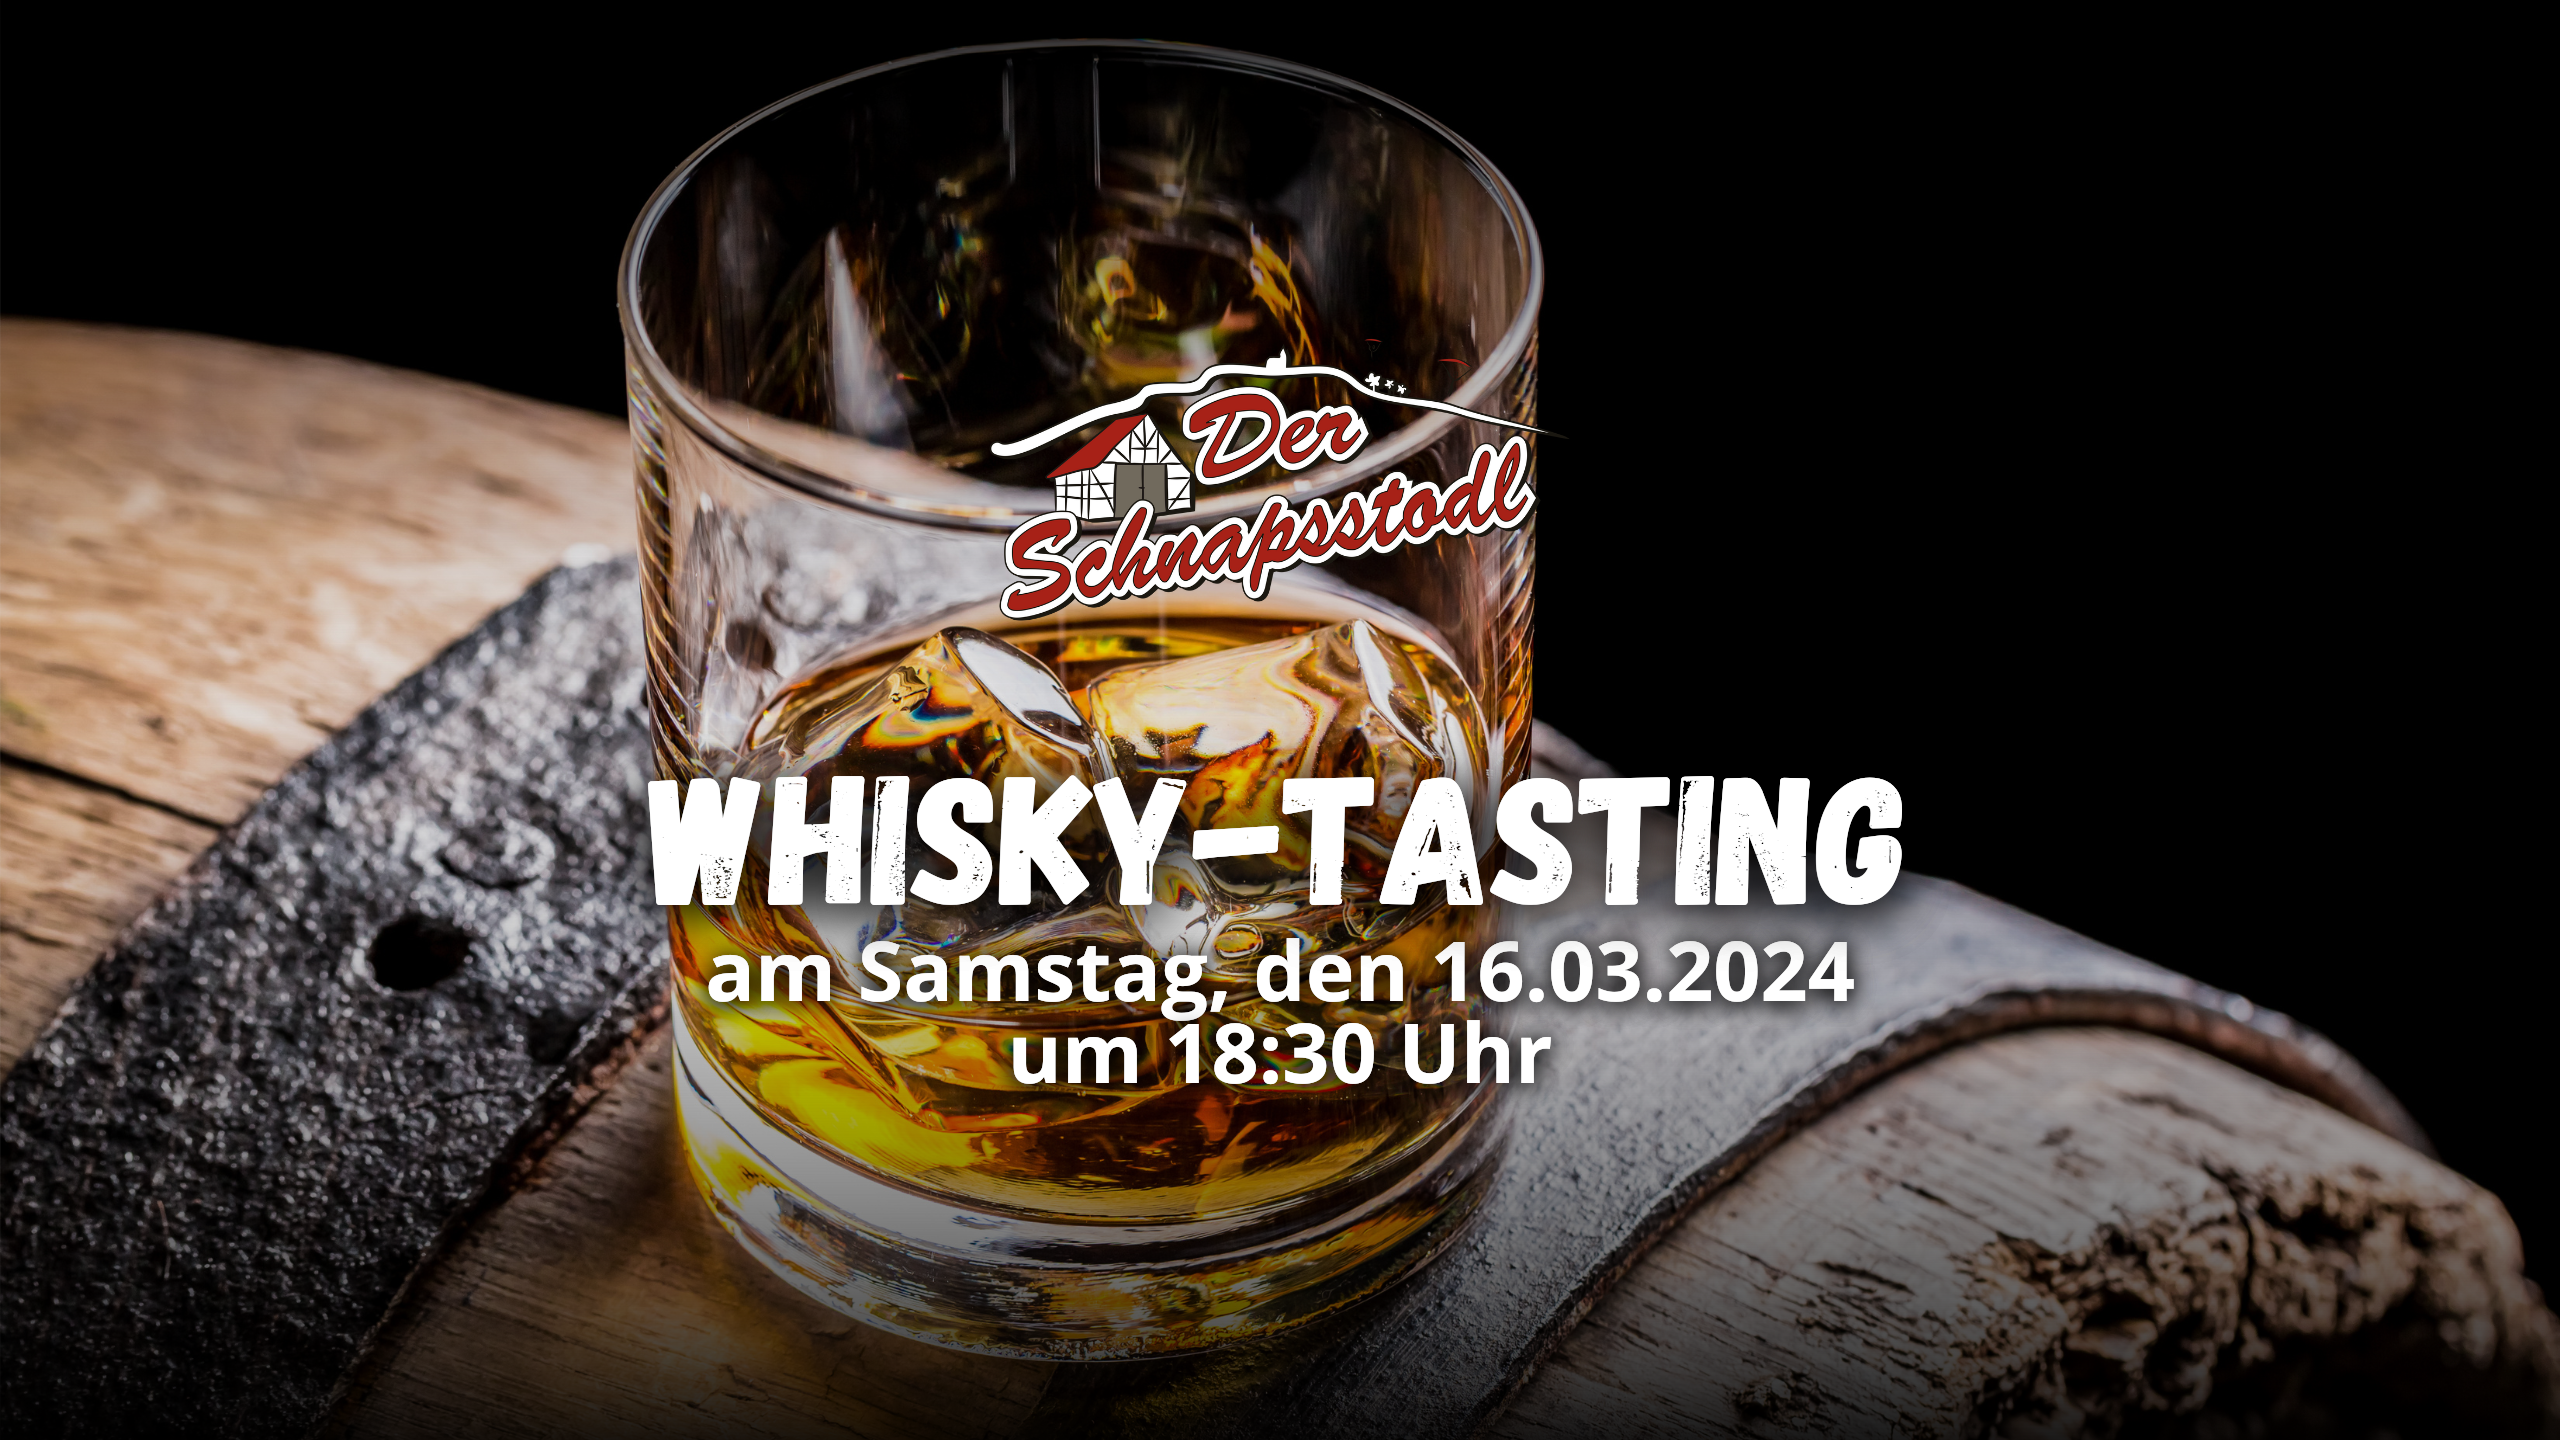 Whisky-Tasting im Schnapsstodl am 16.03.2024